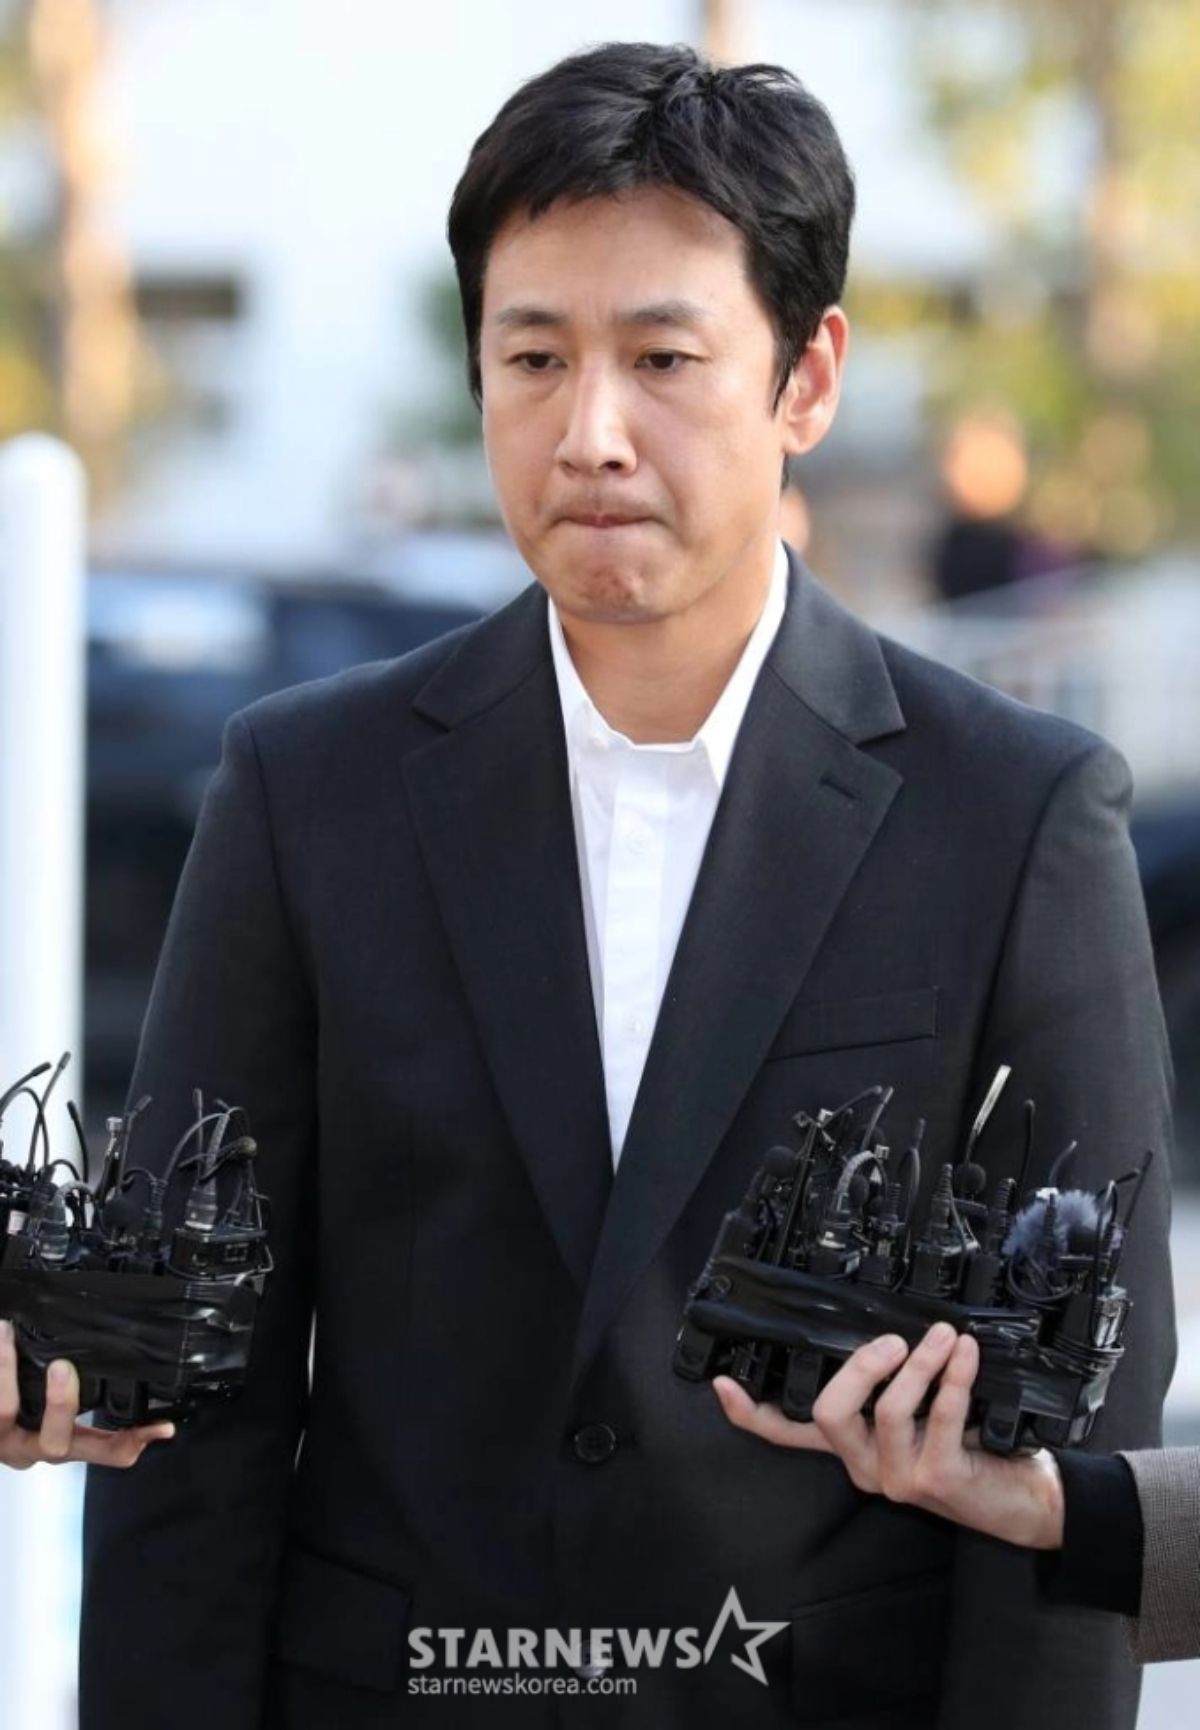 Cơ quan Pháp y Quốc gia Hàn Quốc vừa công bố kết quả xét nghiệm 100 sợi tóc của Lee Sun Kyun